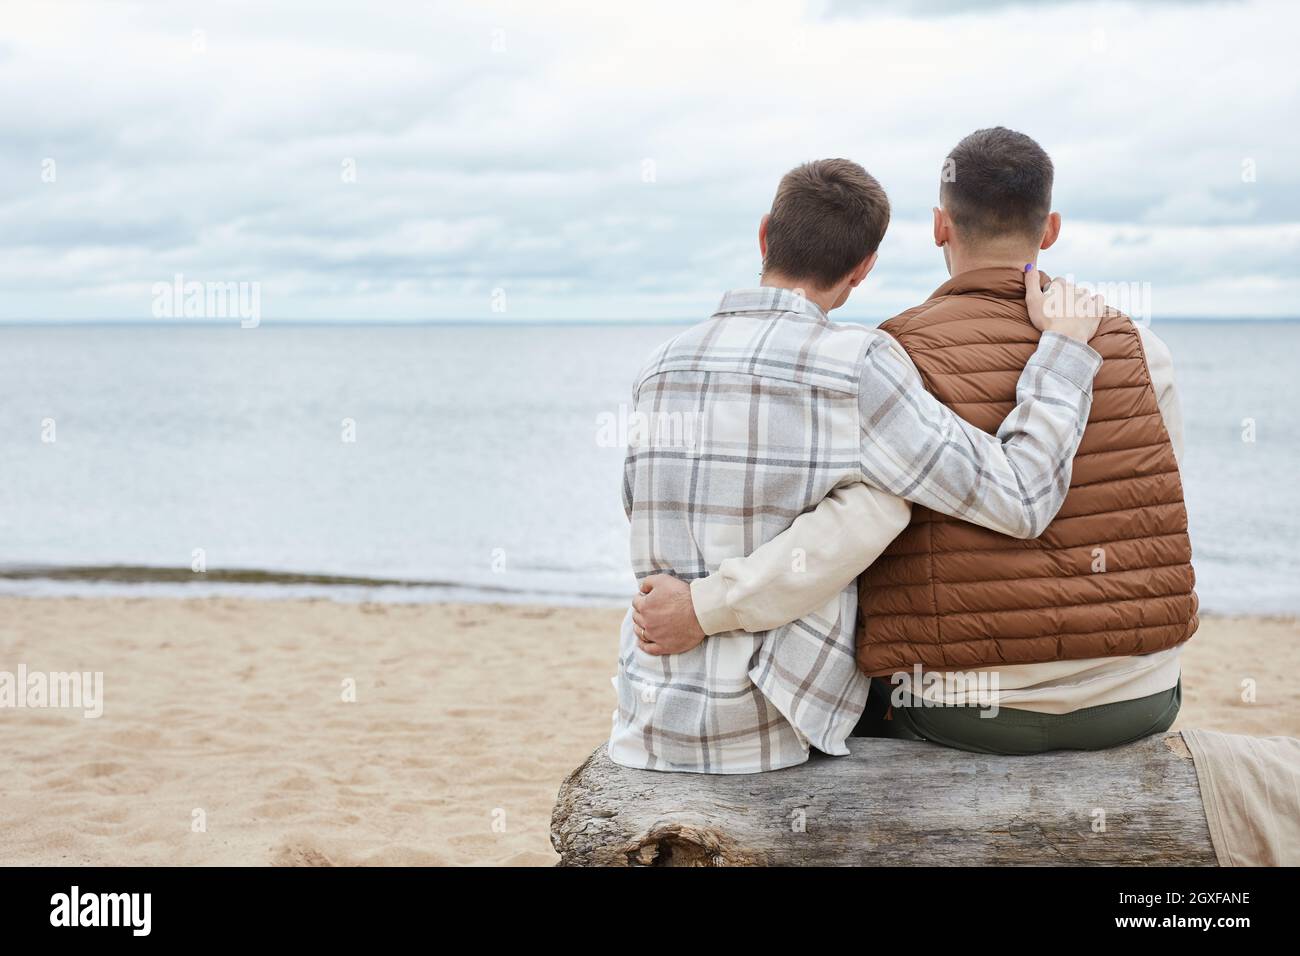 Vue arrière portrait de jeunes couples gays embrassant sur la plage tout en appréciant la vue sur la mer, espace de copie Banque D'Images